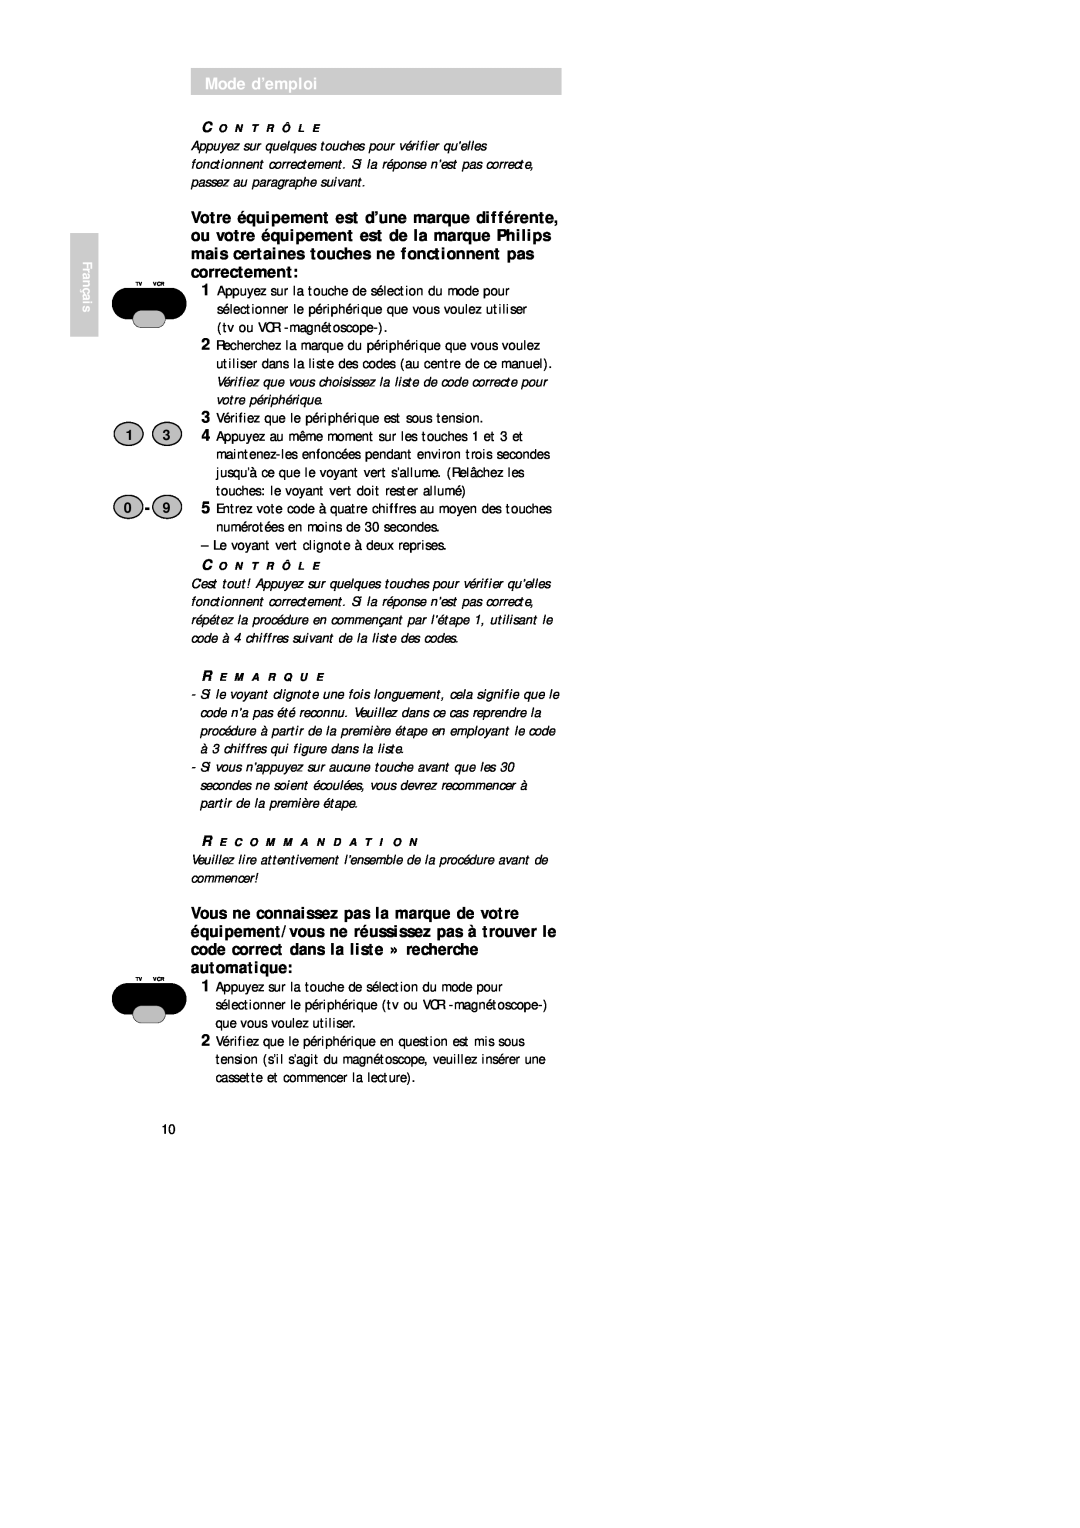 Philips SBC RU 520 manual Mode d’emploi, 3 Vérifiez que le périphérique est sous tension 